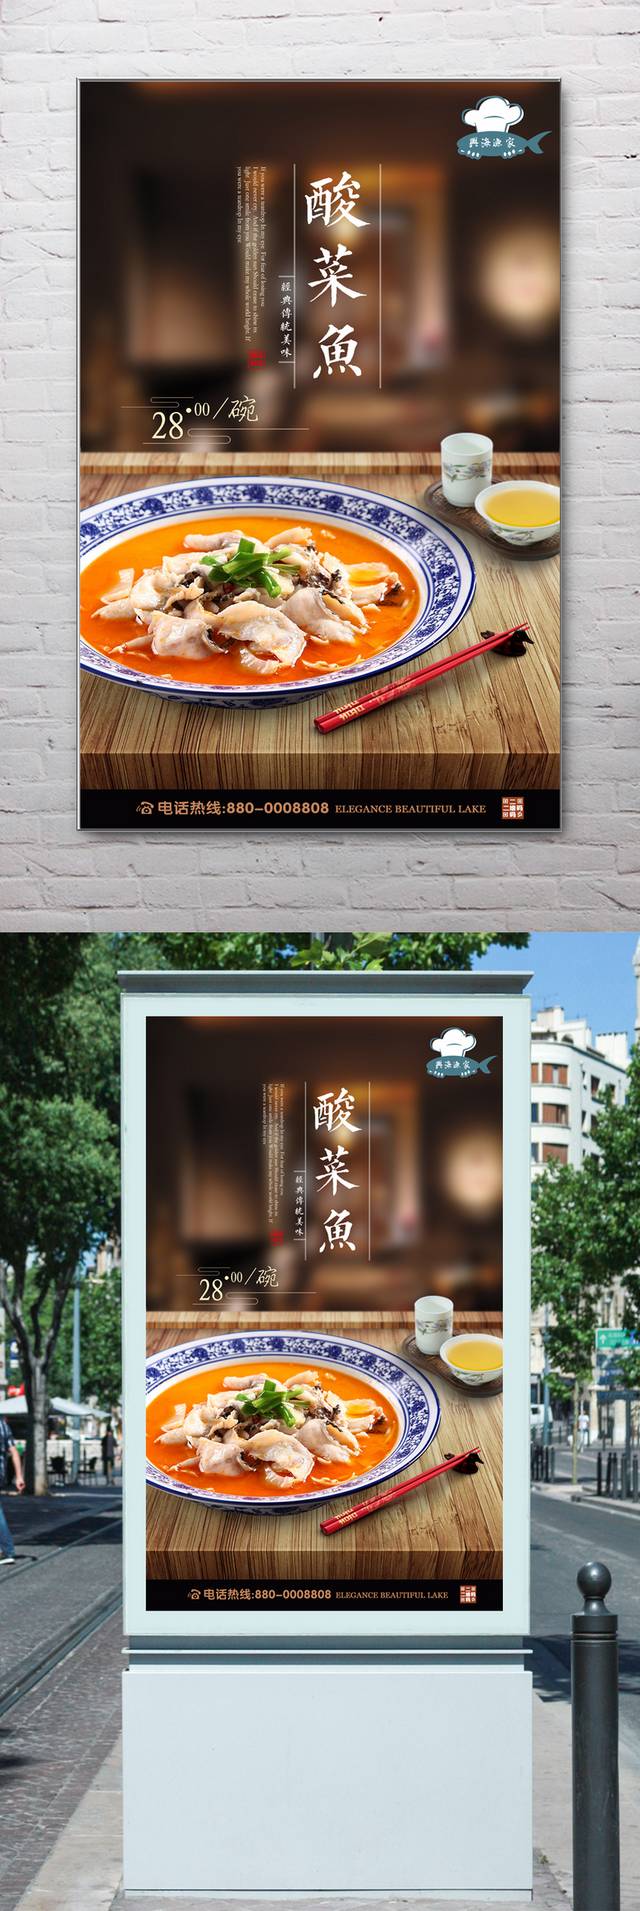 酸菜鱼火锅宣传海报设计psd下载